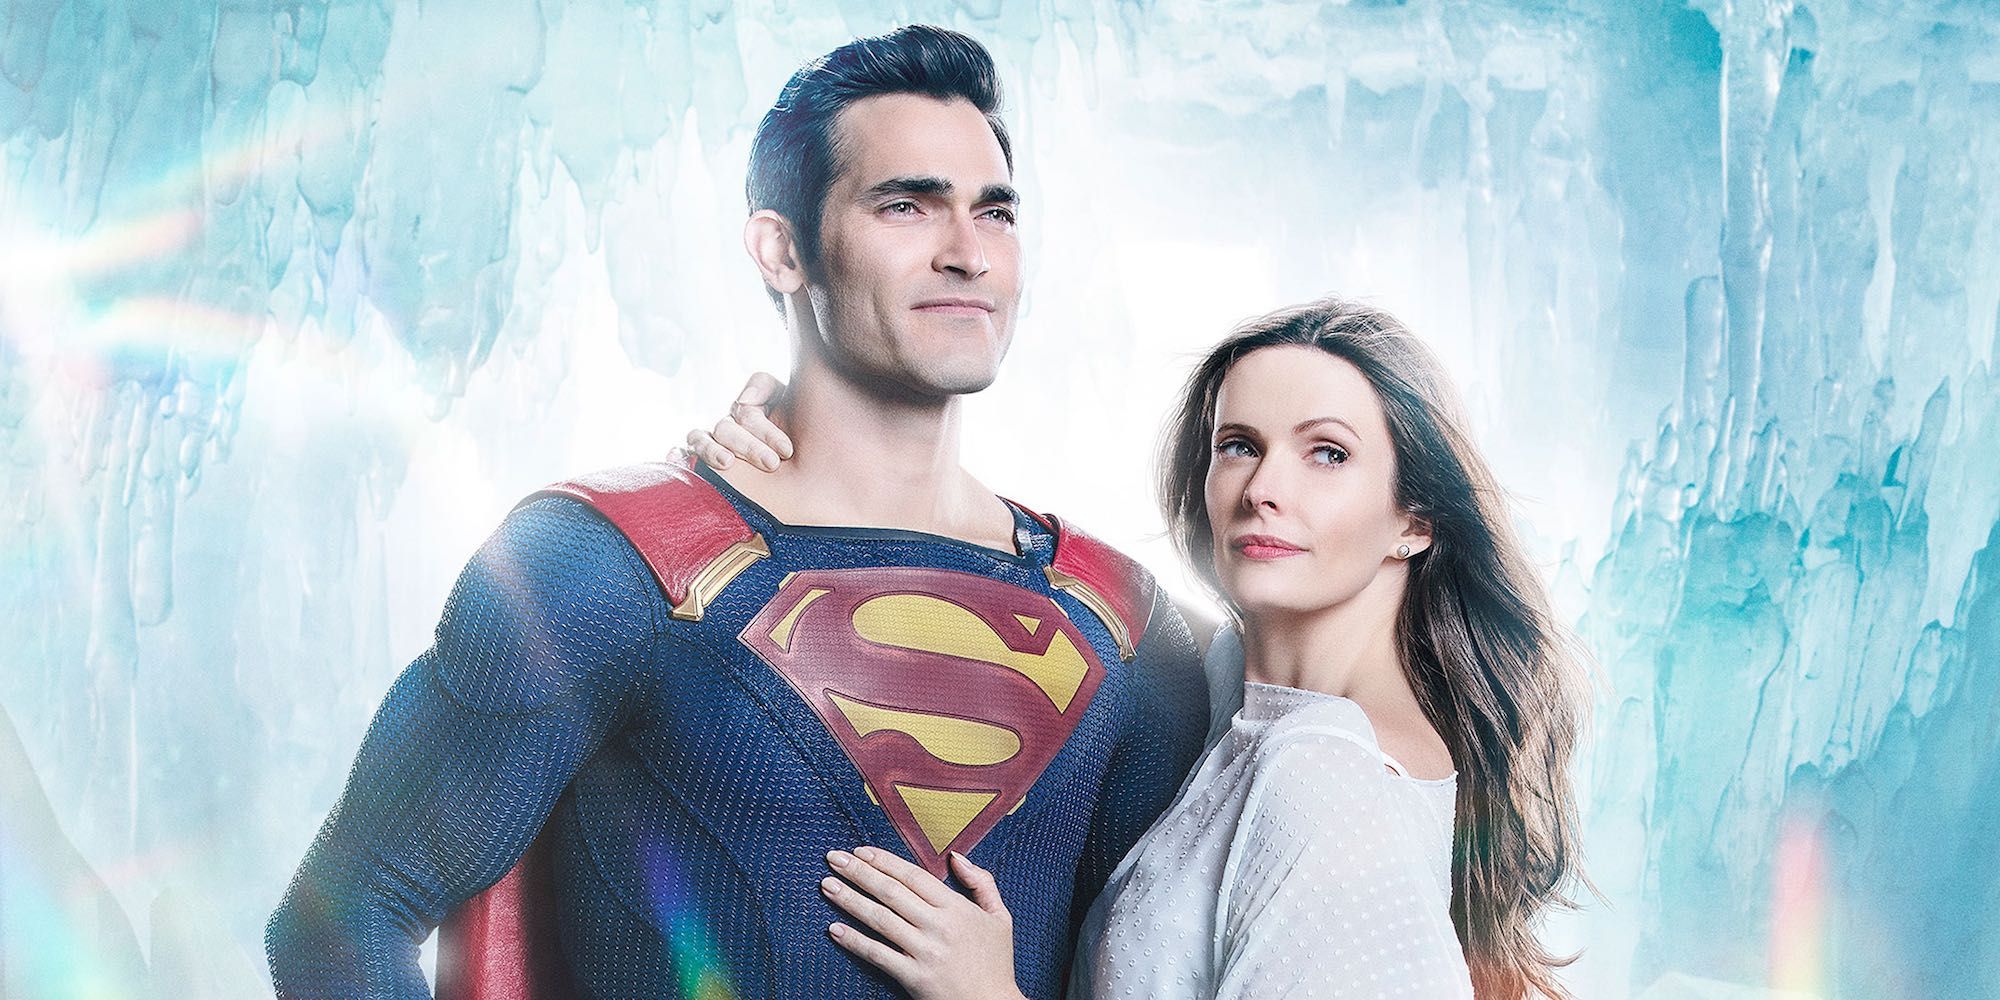 Superman (Tyler Hoechlin) and Lois Lane (Elizabeth Tulloch) in the Arrowverse